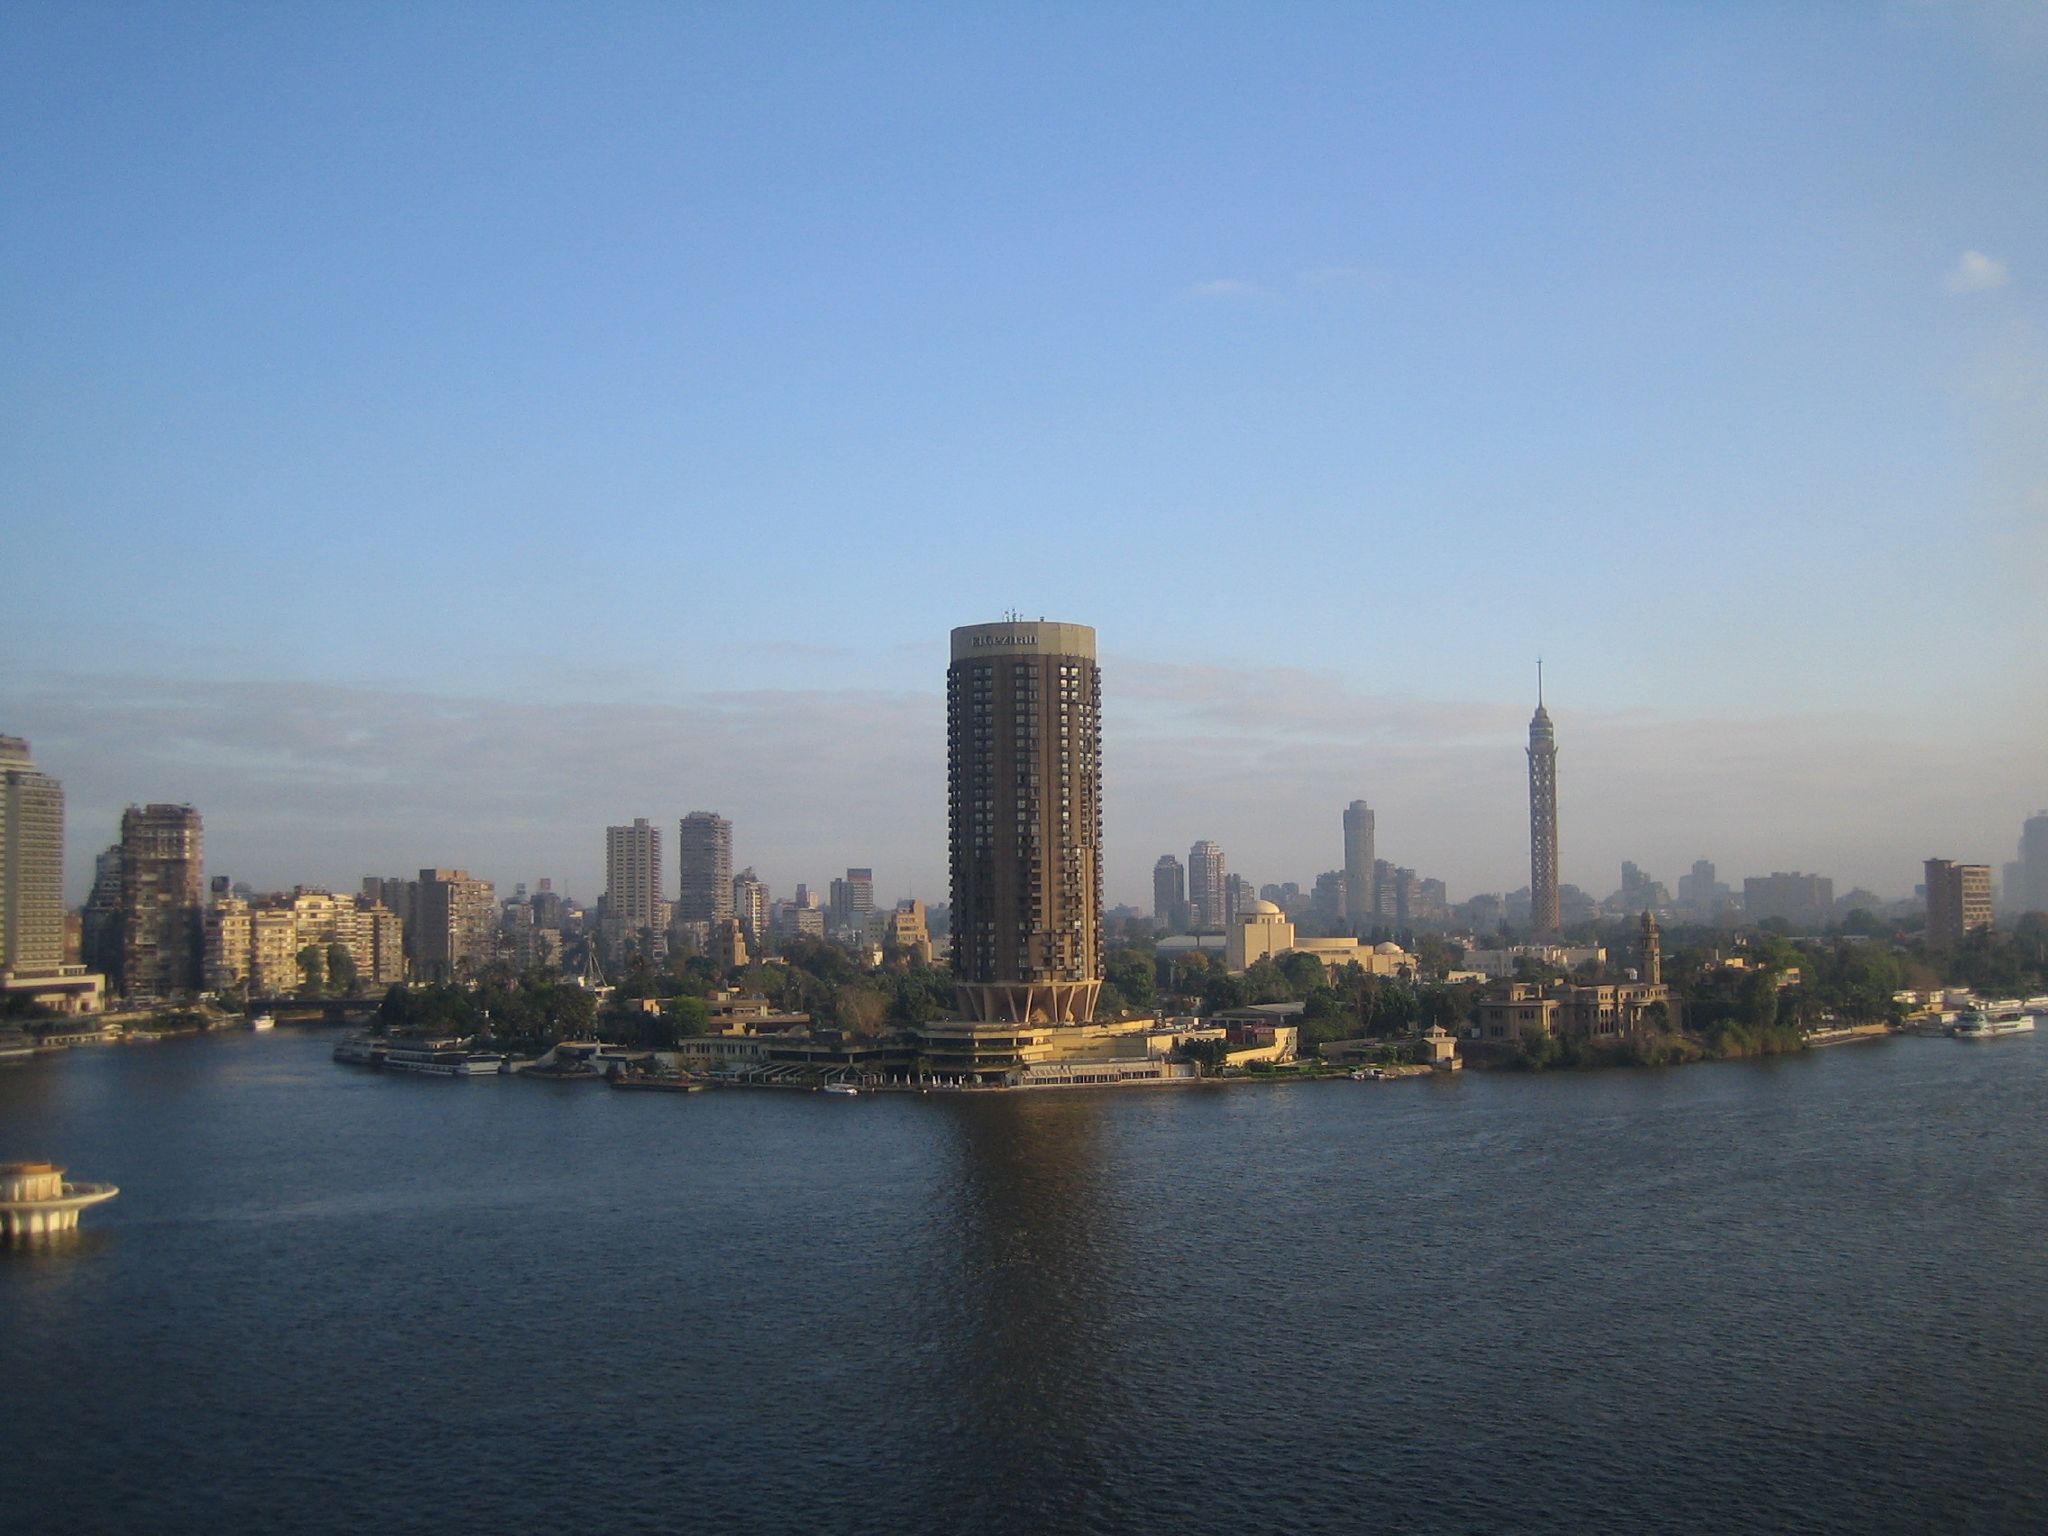 Skyline von Kairo, Ägypten